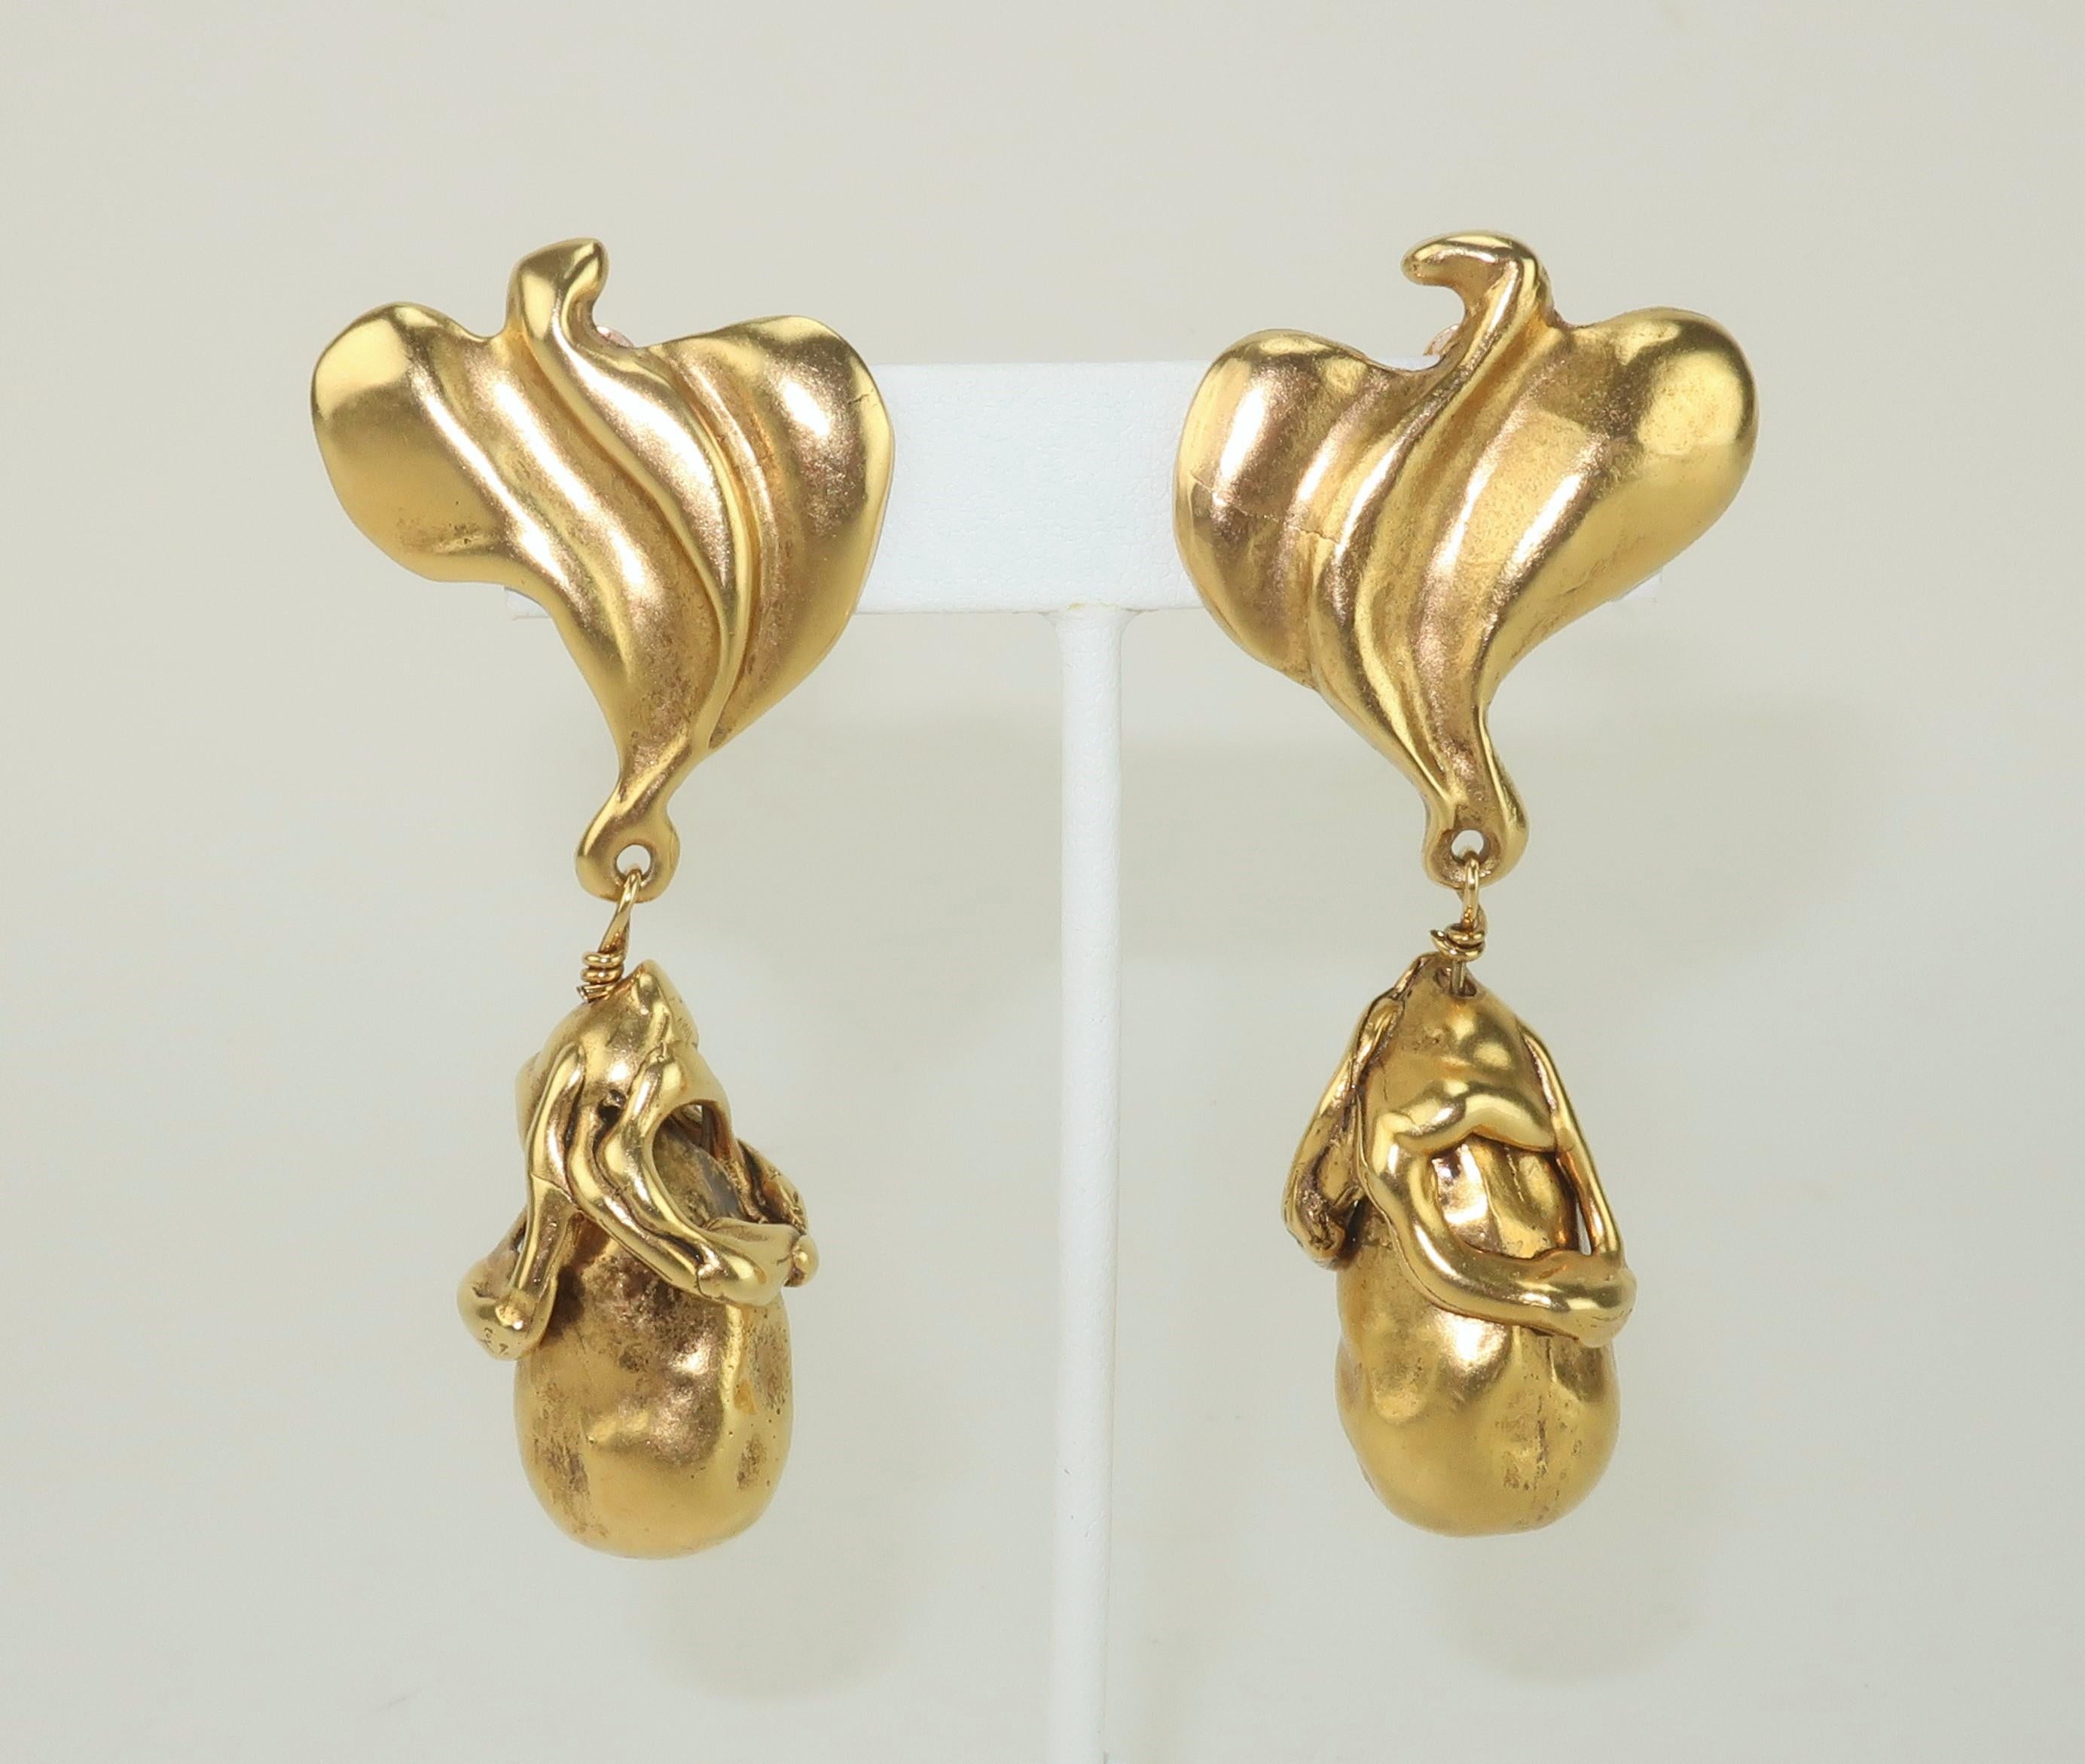 Ende des 20. Jahrhunderts Donna Karan goldfarbene Ohrringe, die abstrakte Vögel und Tropfen im brutalistischen Stil darstellen.  Die Ohrringe sind wunderschön gemacht, mit hochwertigen Details und einem modernistischen Look.  Rückseitig gestempelt